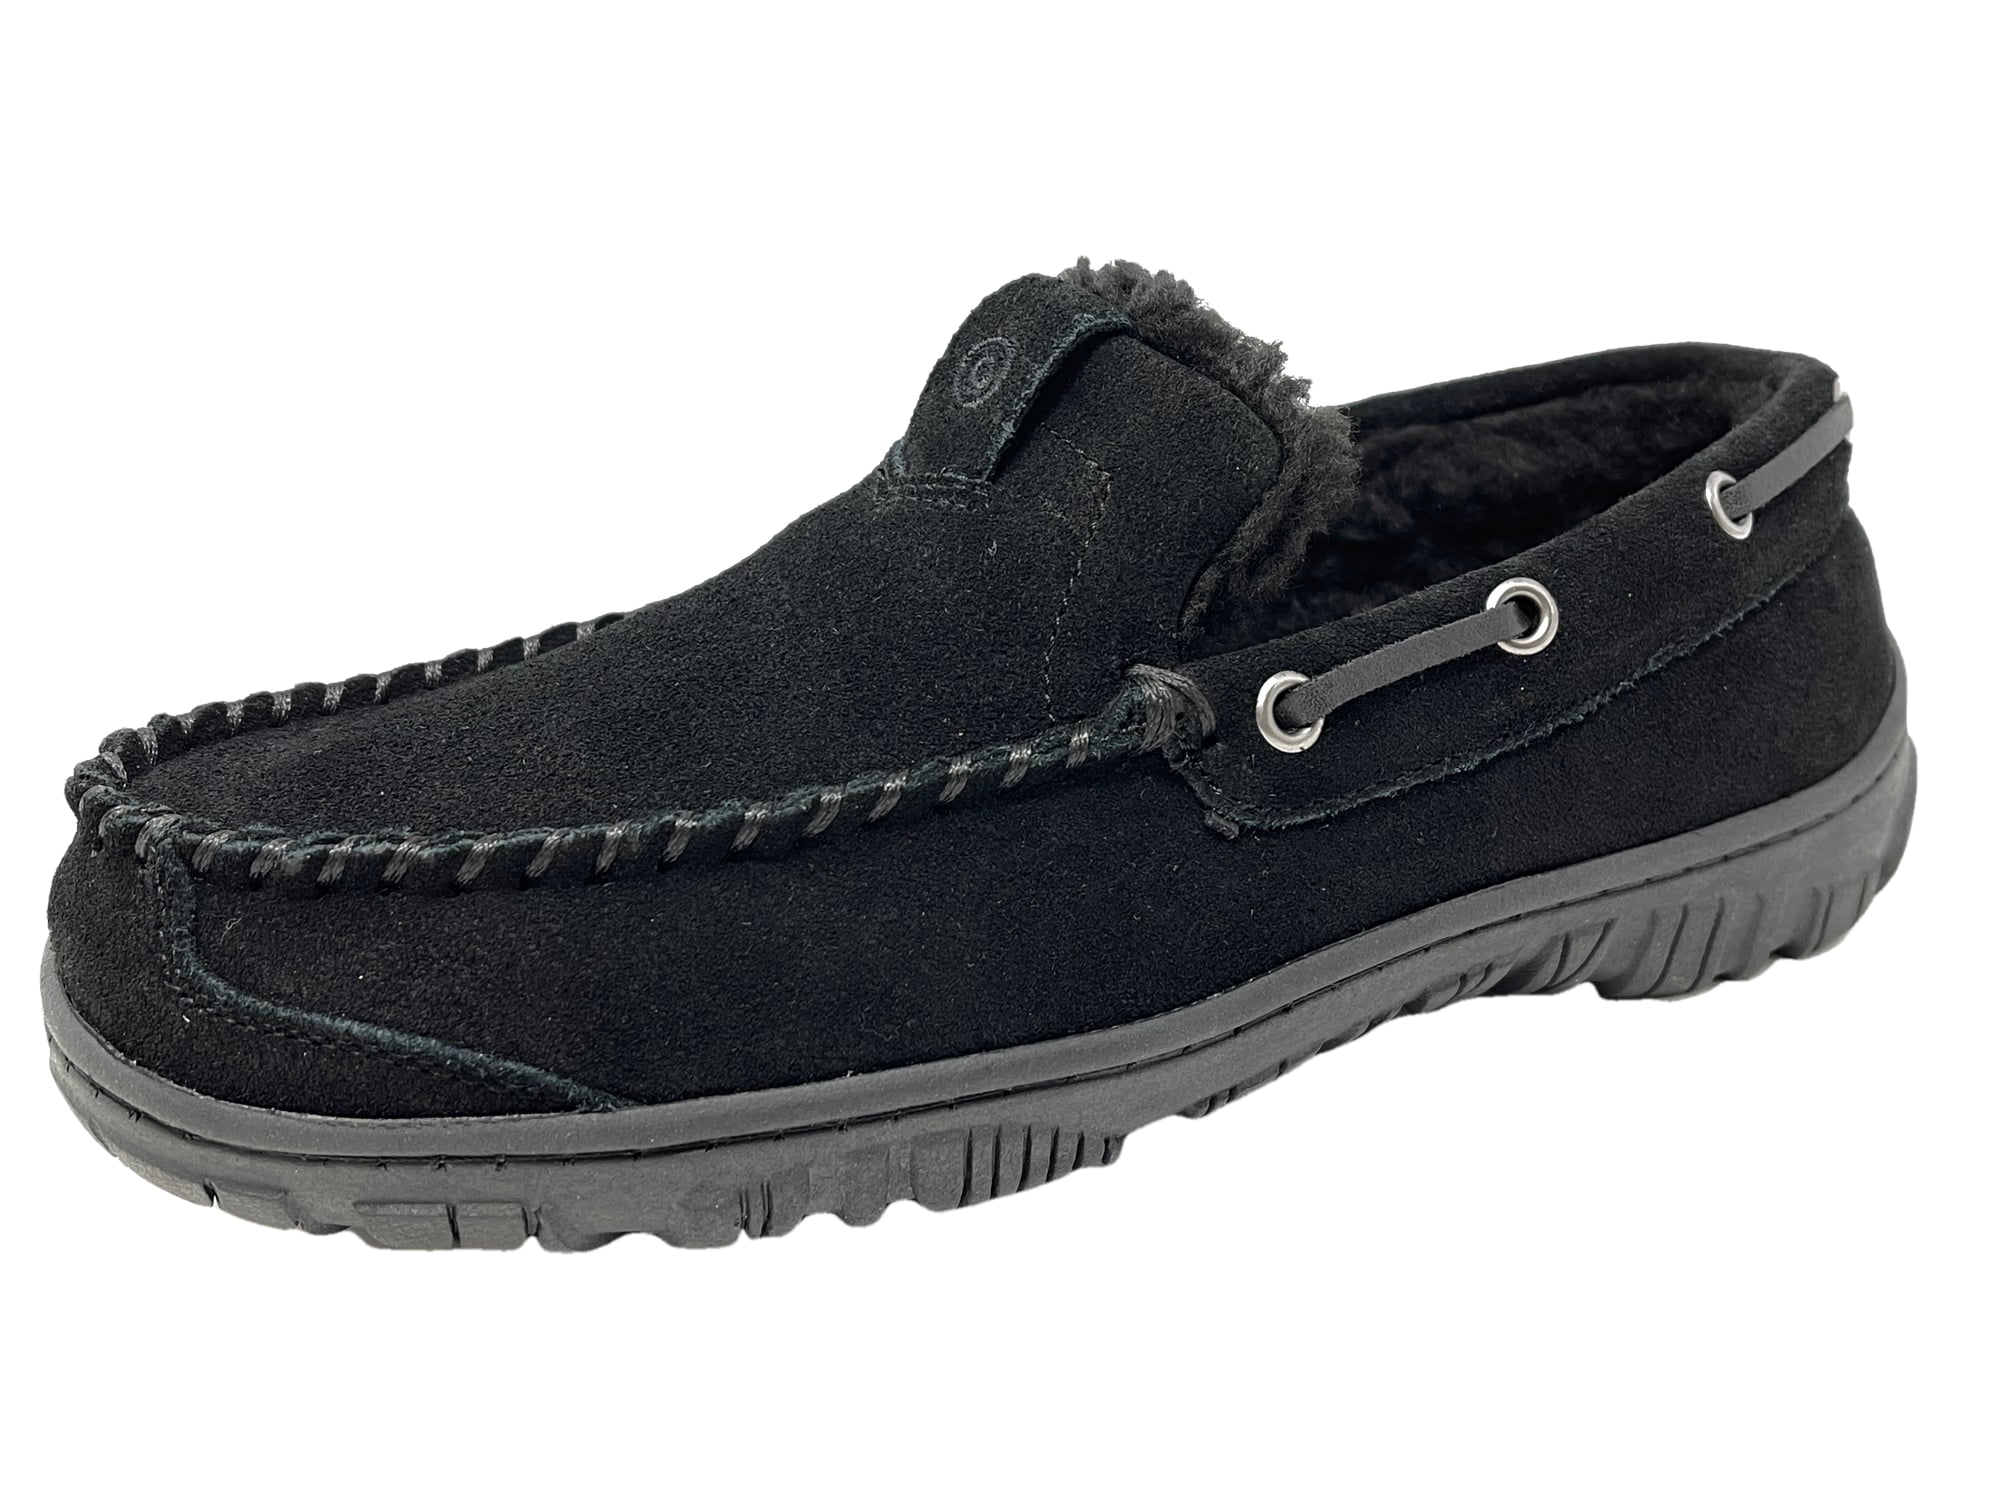 clarks men's black slippers